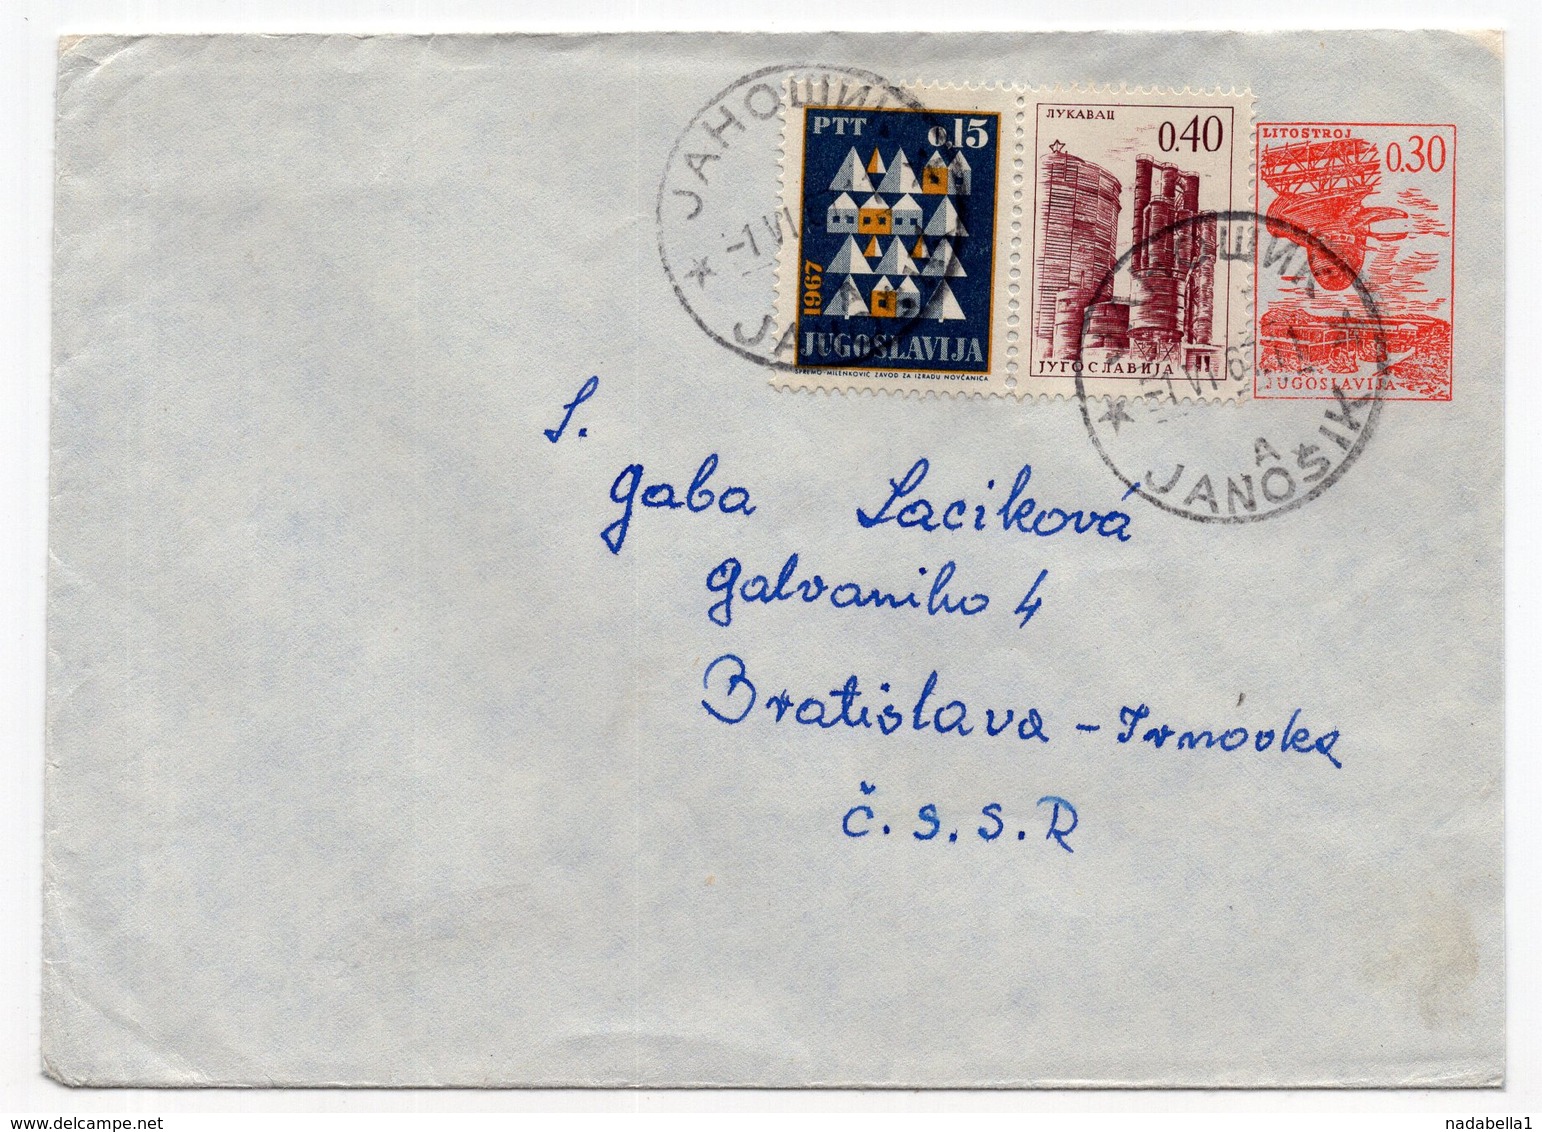 1967 YUGOSLAVIA, SERBIA, JÁNOŠÍK TO BRATISLAVA, CZECHOSLOVAKIA, STATIONERY COVER - Postal Stationery